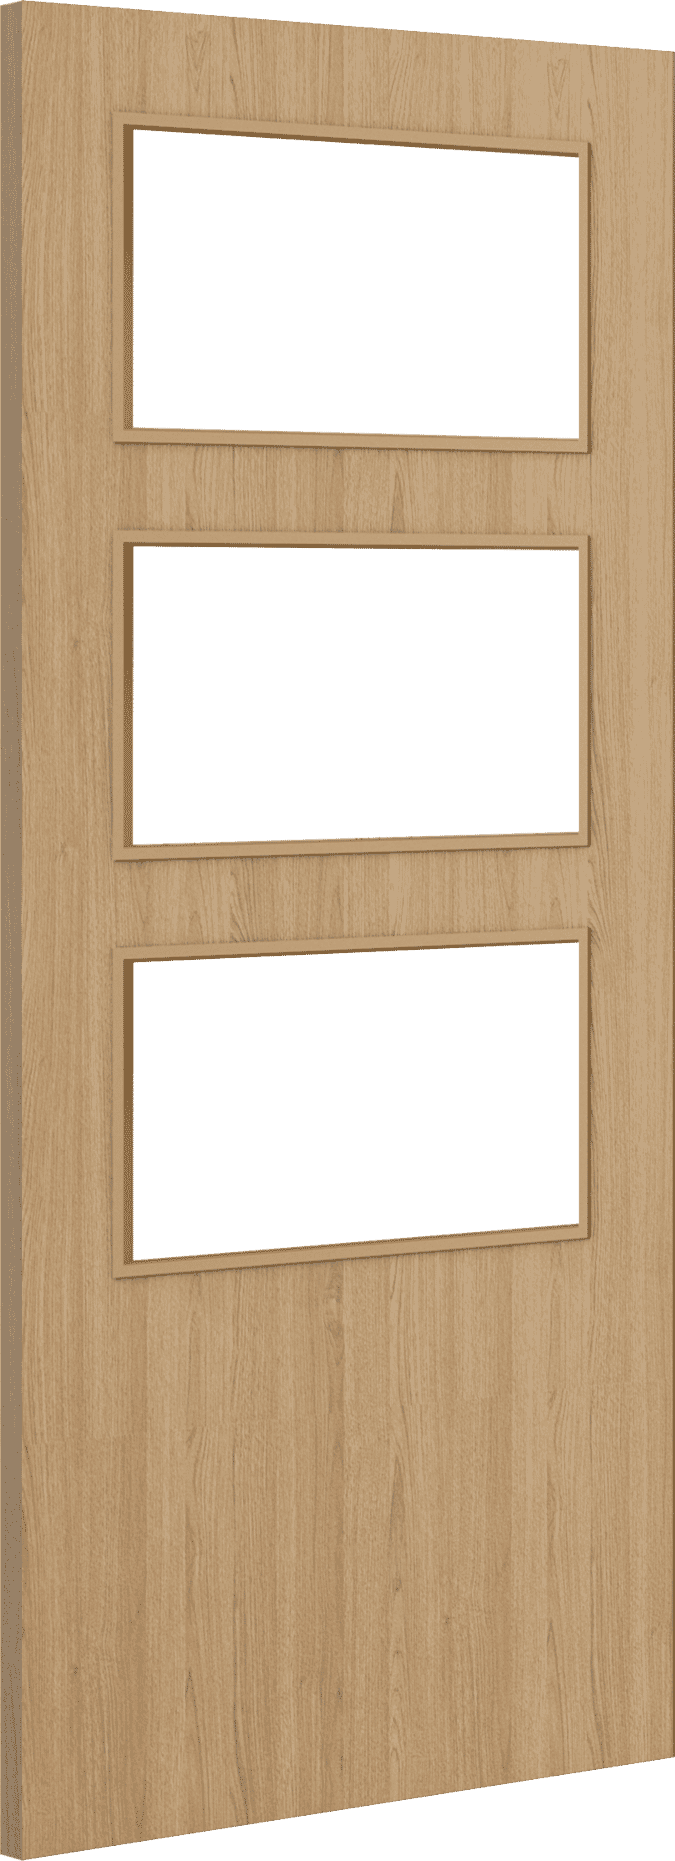 2040mm x 826mm x 44mm Architectural Oak 03 Clear Glazed - Prefinished FD30 Fire Door Blank